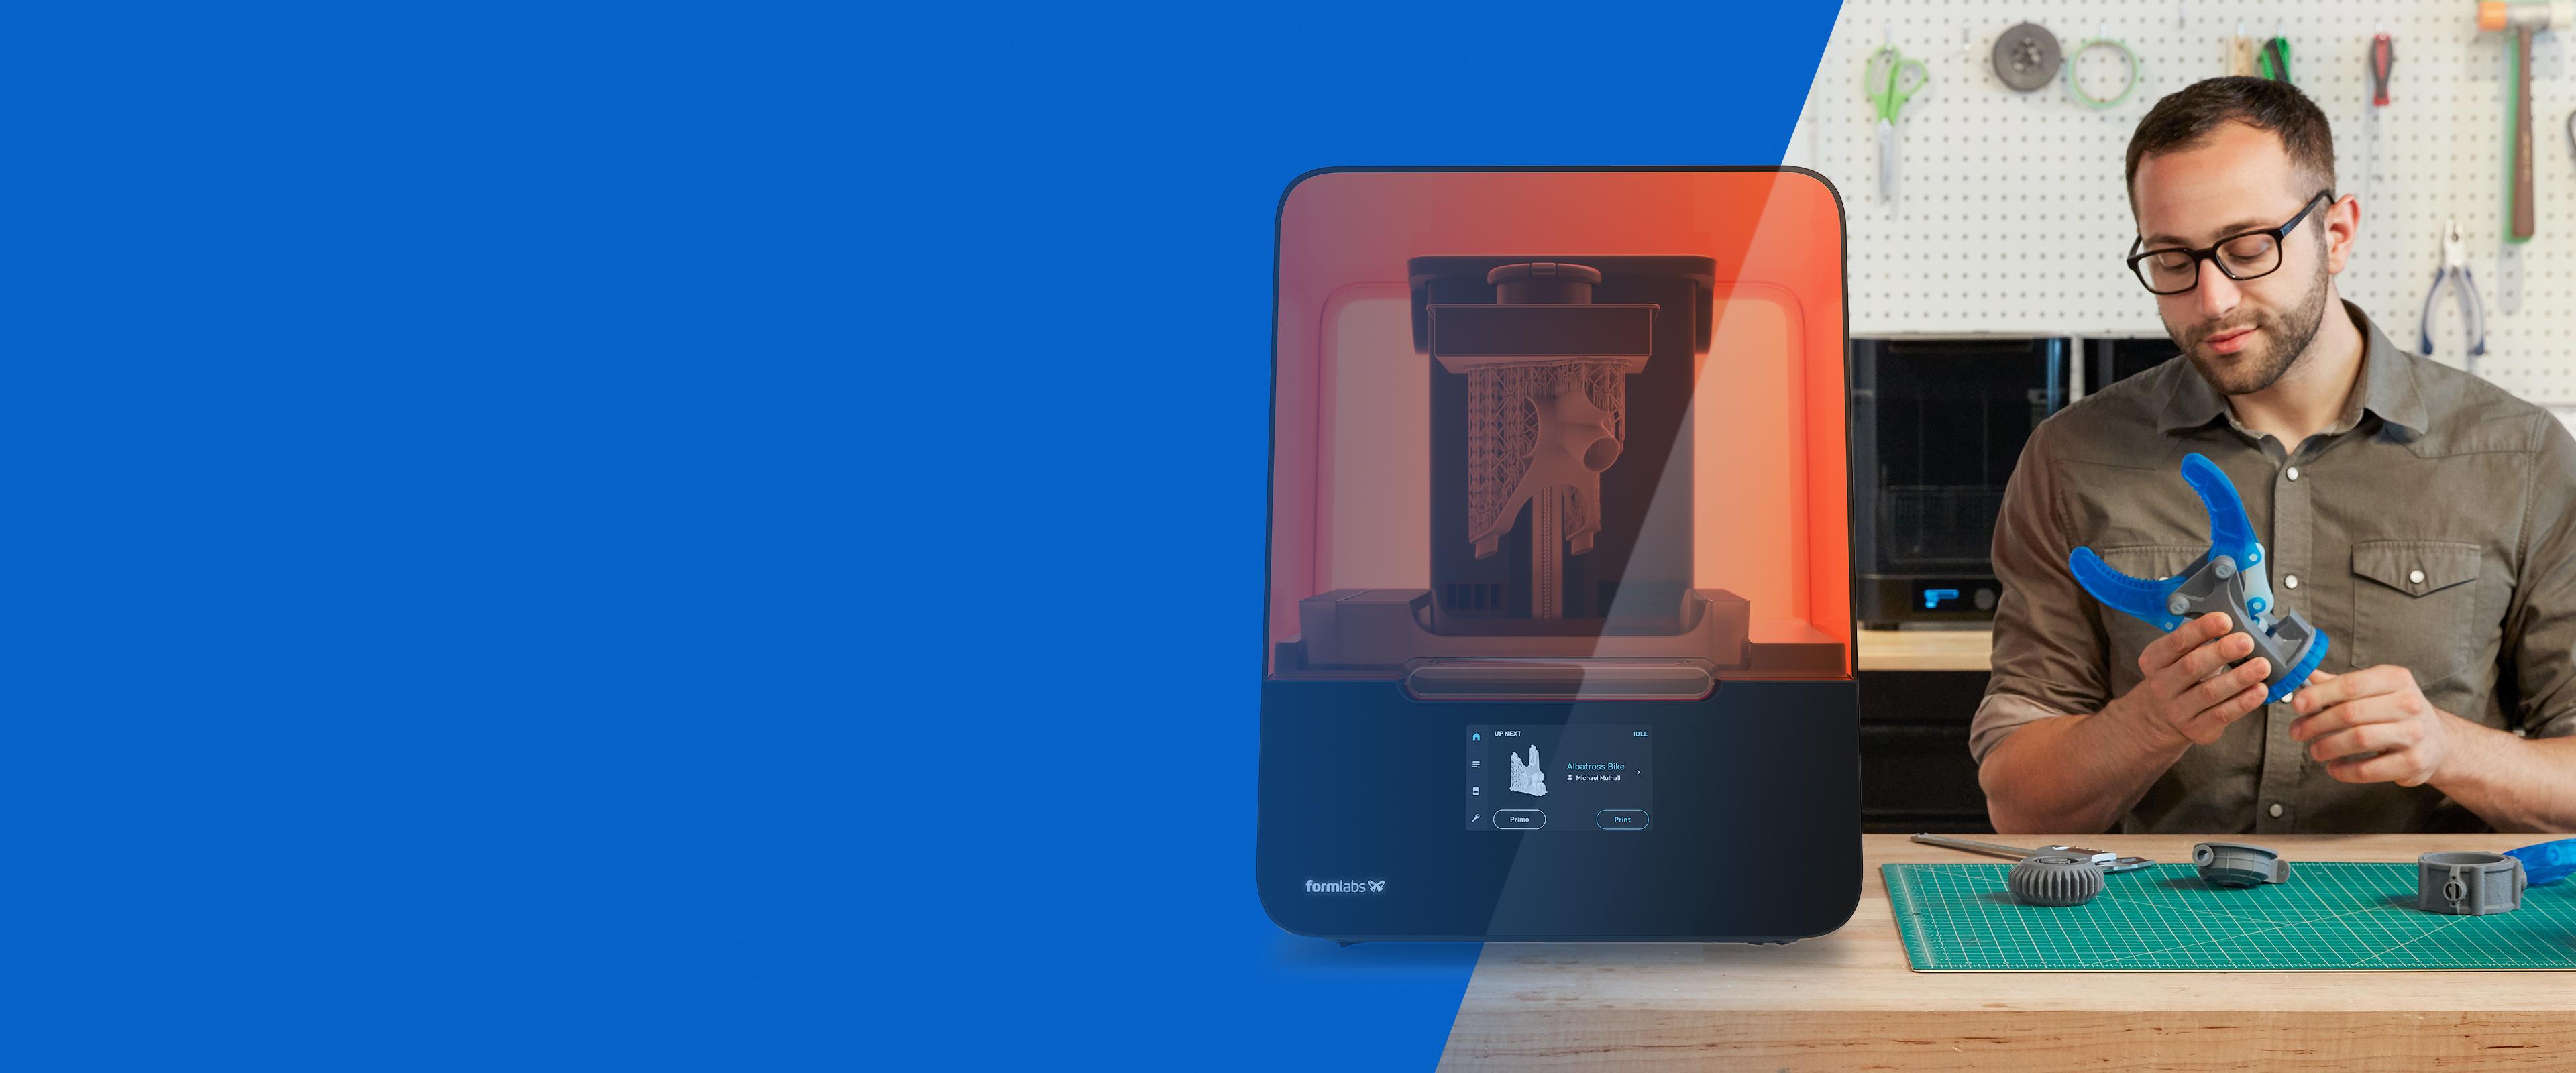 Formlabs Form 3 SLA Resin 3D Printer Enclosure V2.0 – Clearview